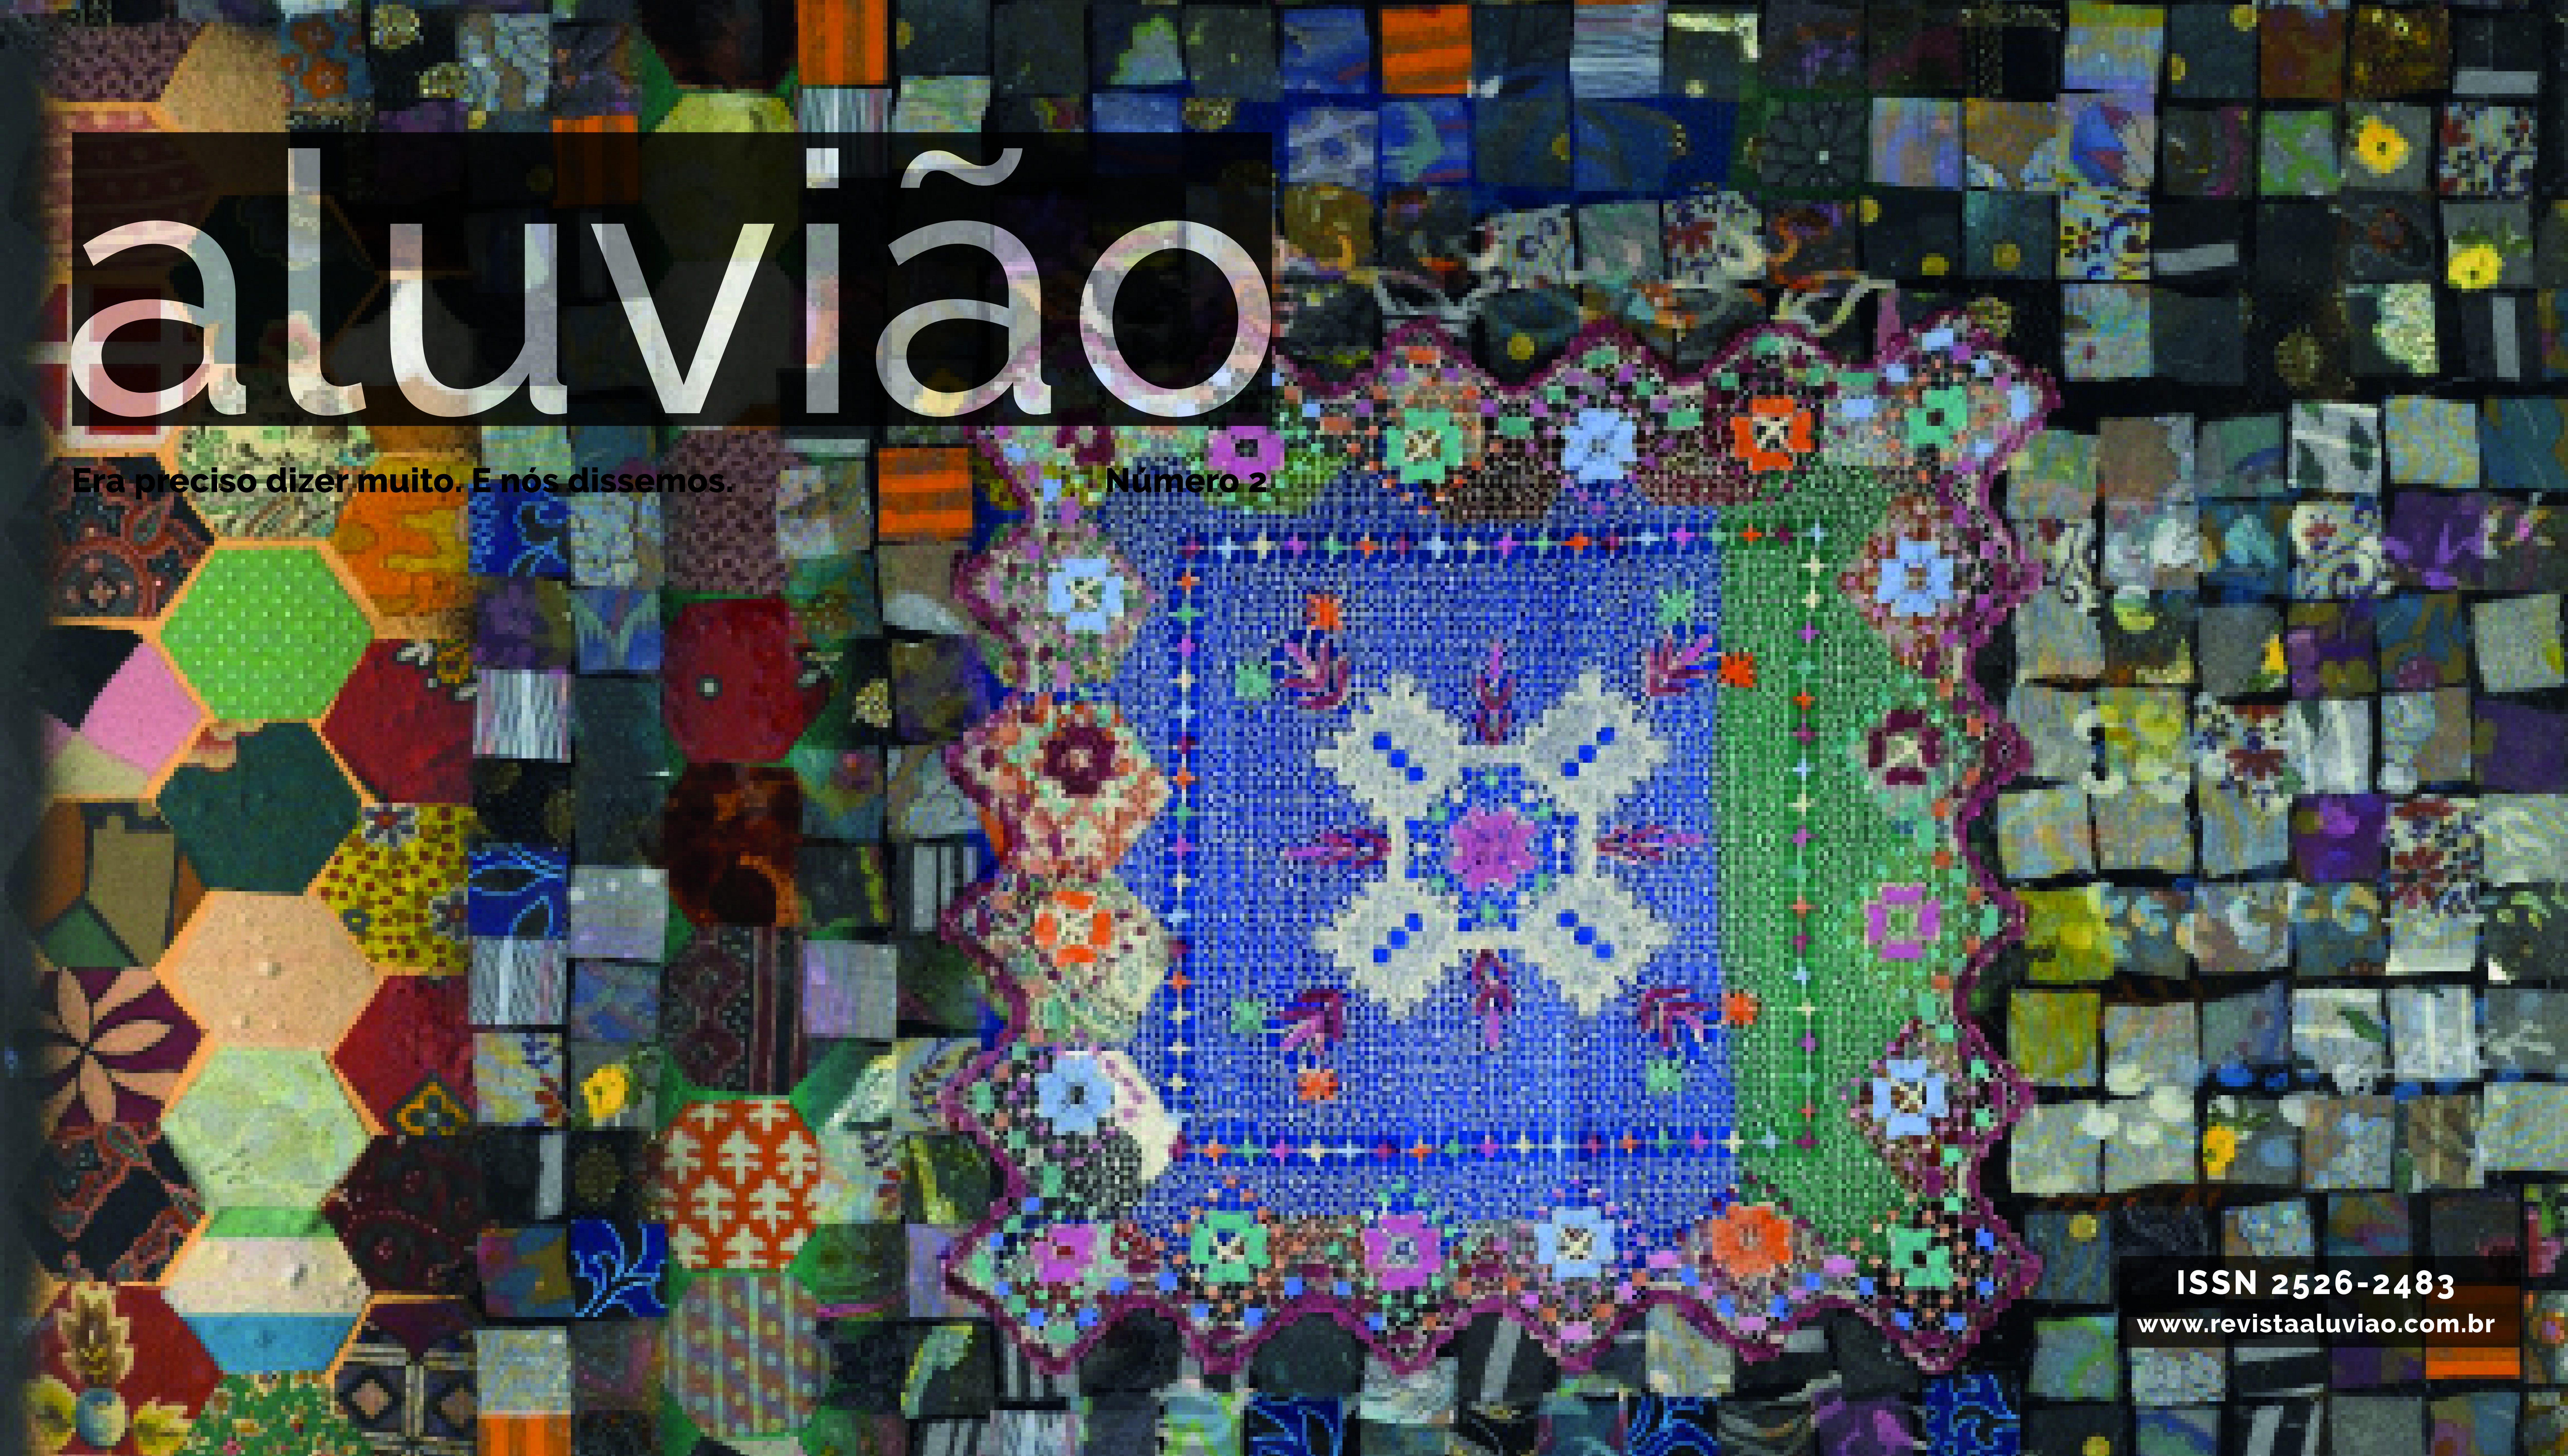 Obra de arte de Miriam Schapiro feita com colagens de diversas cores, tamanhos e texturas. Lembando de um trabalho conhecido como patchwork.